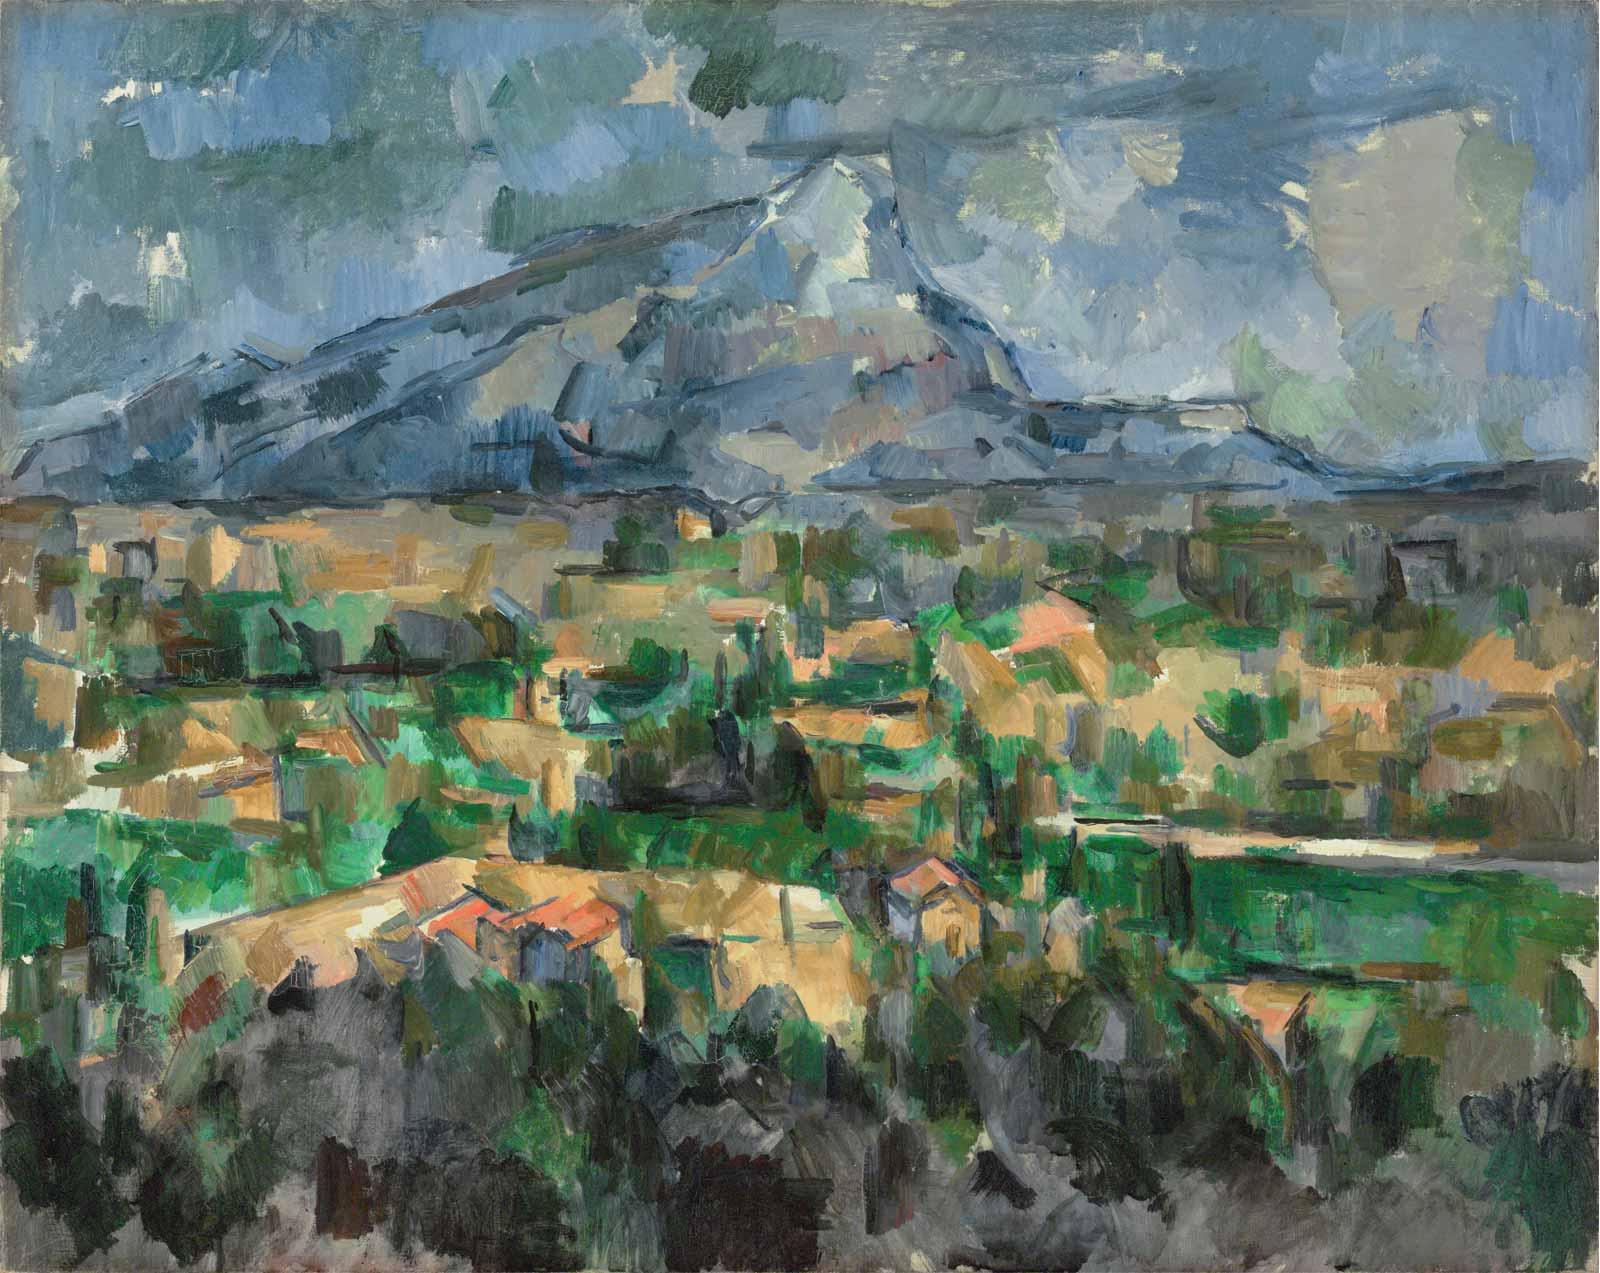 Mont Sainte-Victoire, 1902-1904, by Paul Cézanne